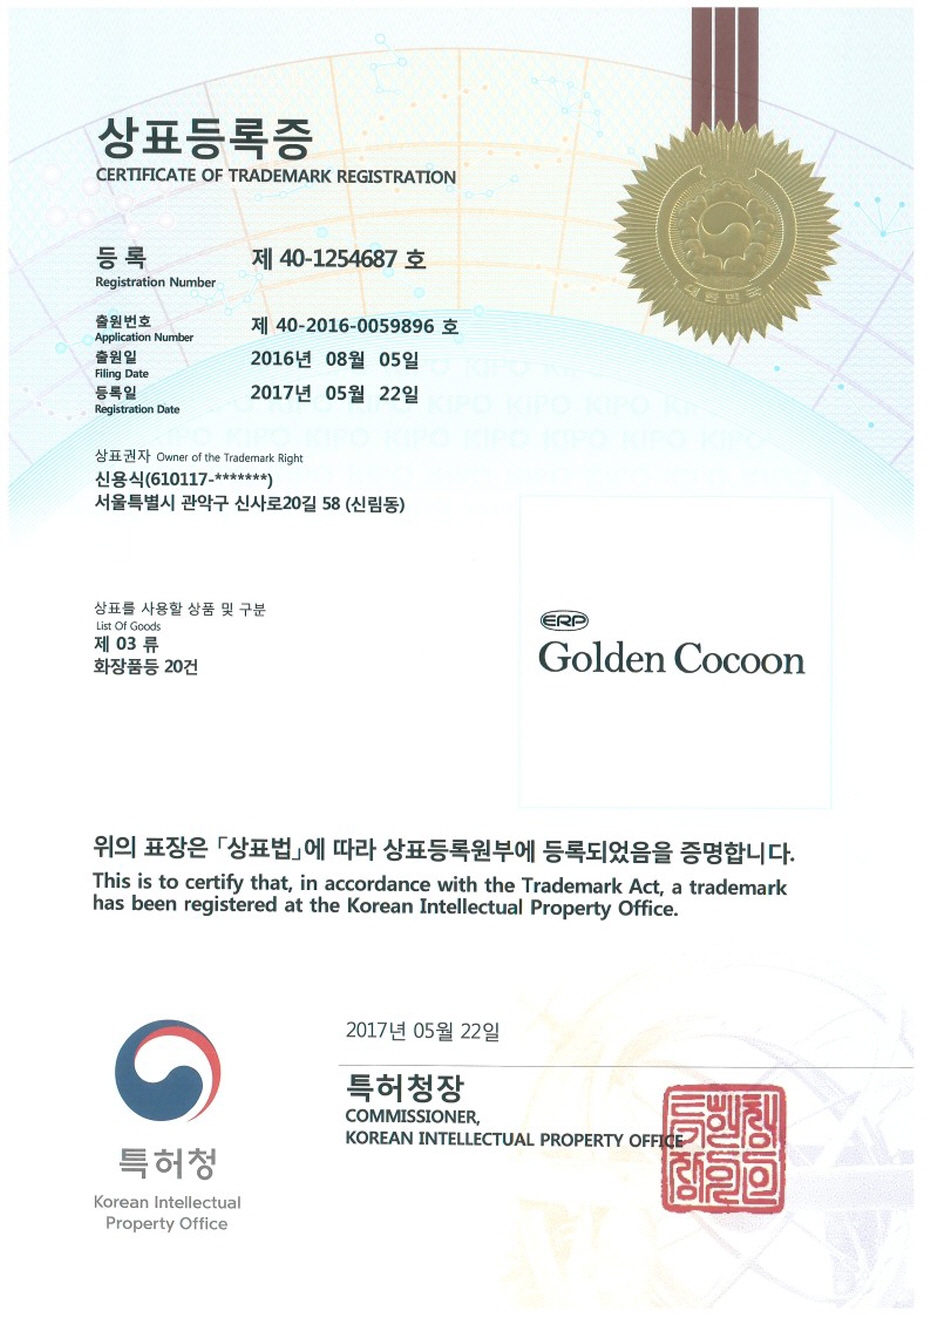 商标注册(ERP Golden Cocoon) [첨부 이미지1]